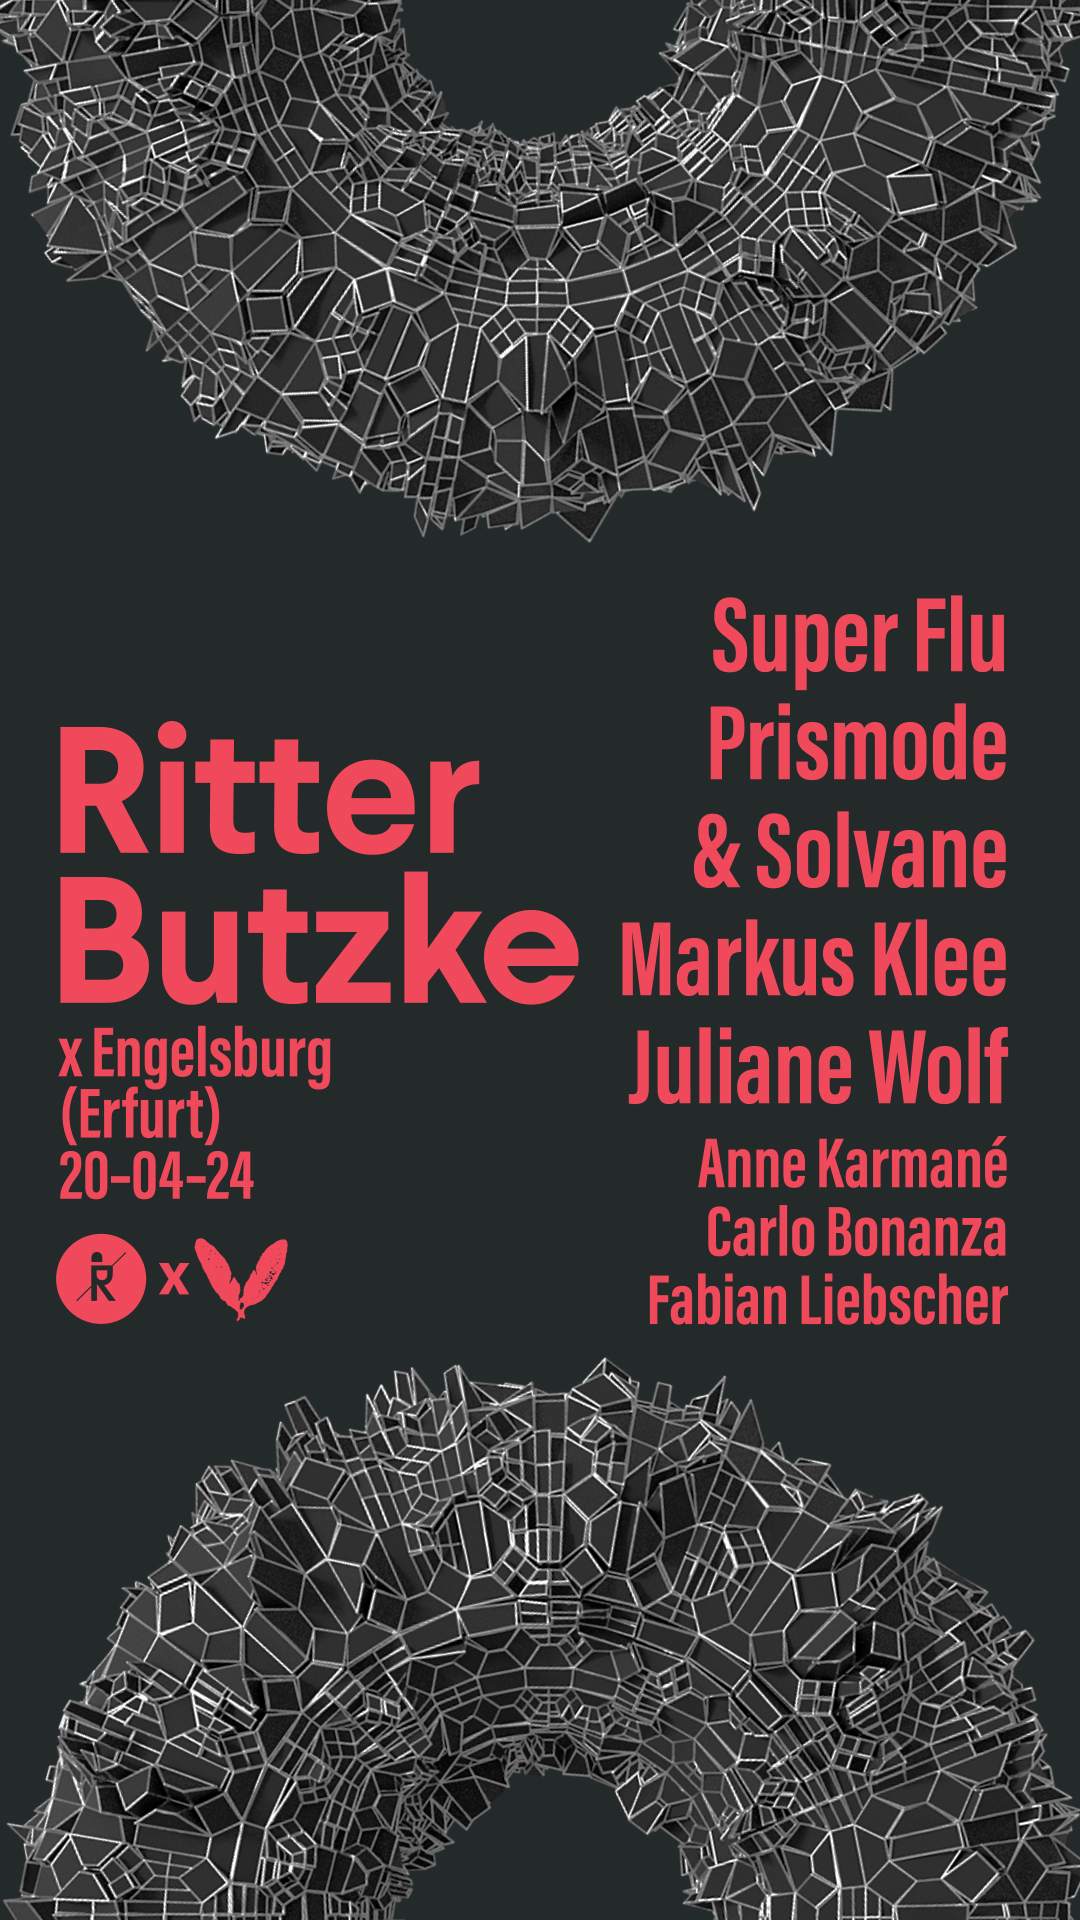 Ritter Butzke in Erfurt (Engelsburg) - フライヤー裏